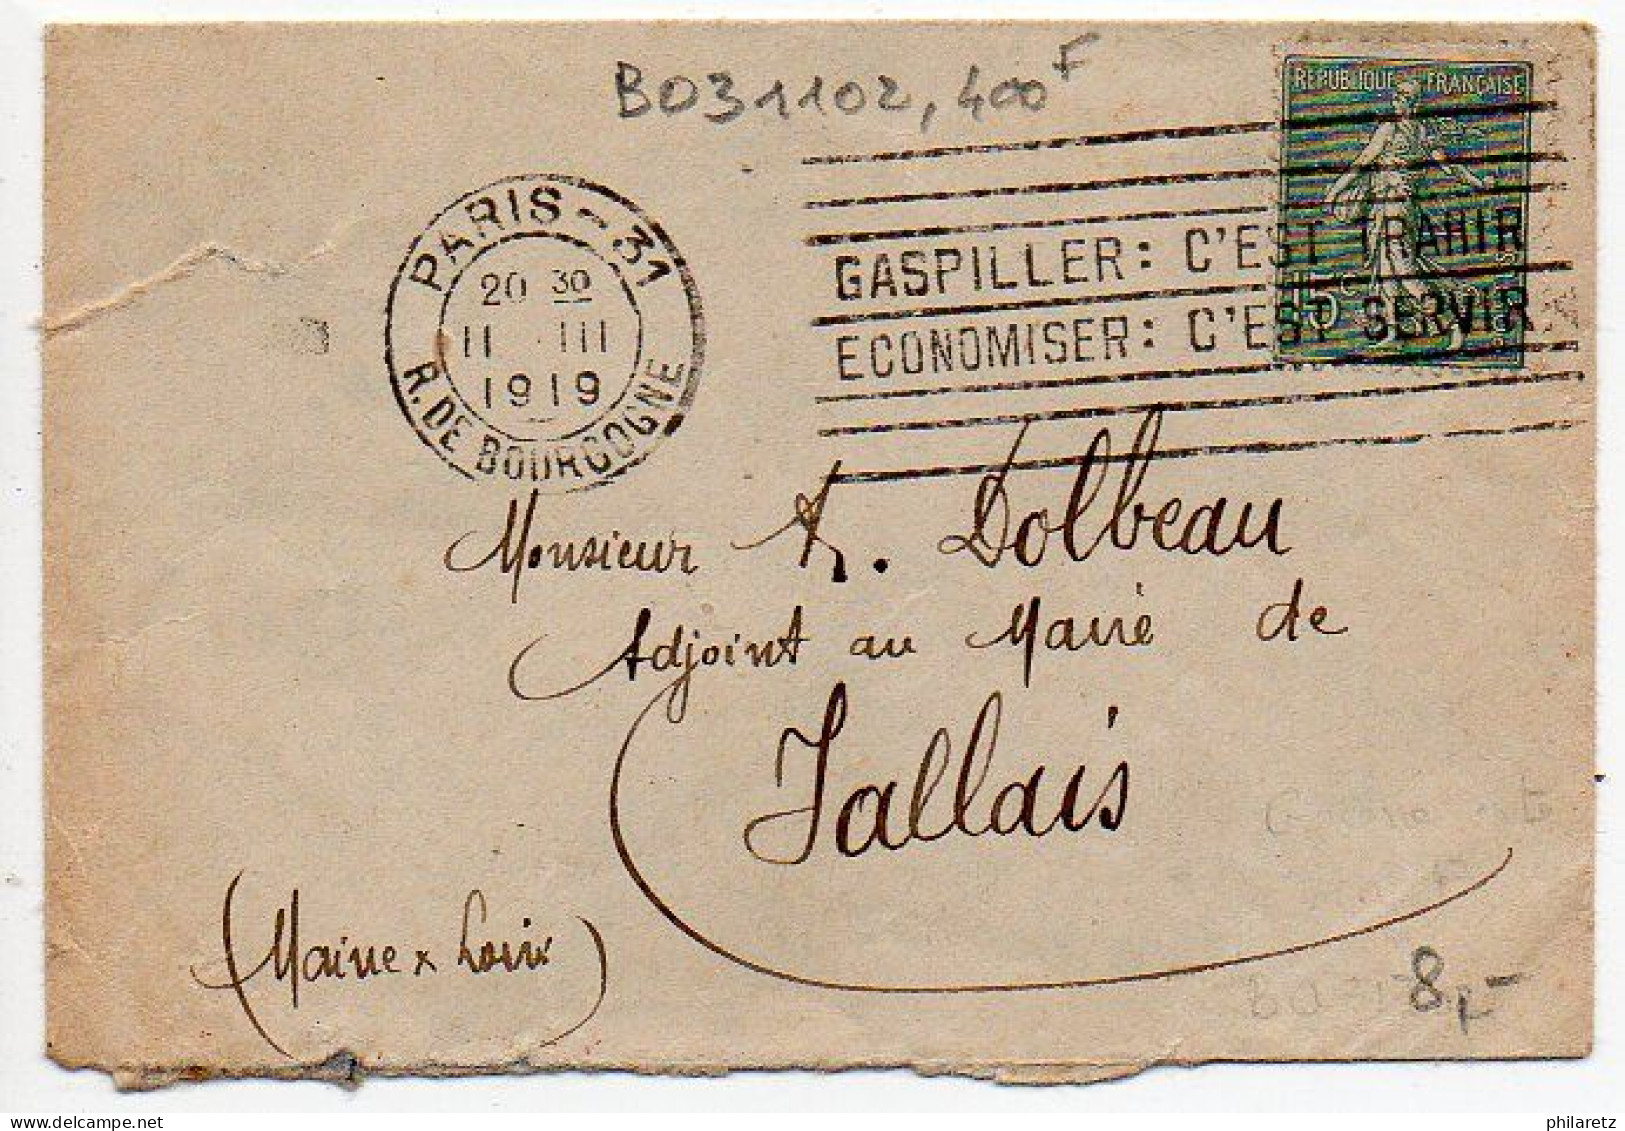 Flamme Dreyfuss B031102 - 'Gaspiller : C'est Trahir / Economiser : C'est Servir' De Paris 31 - Mechanical Postmarks (Advertisement)